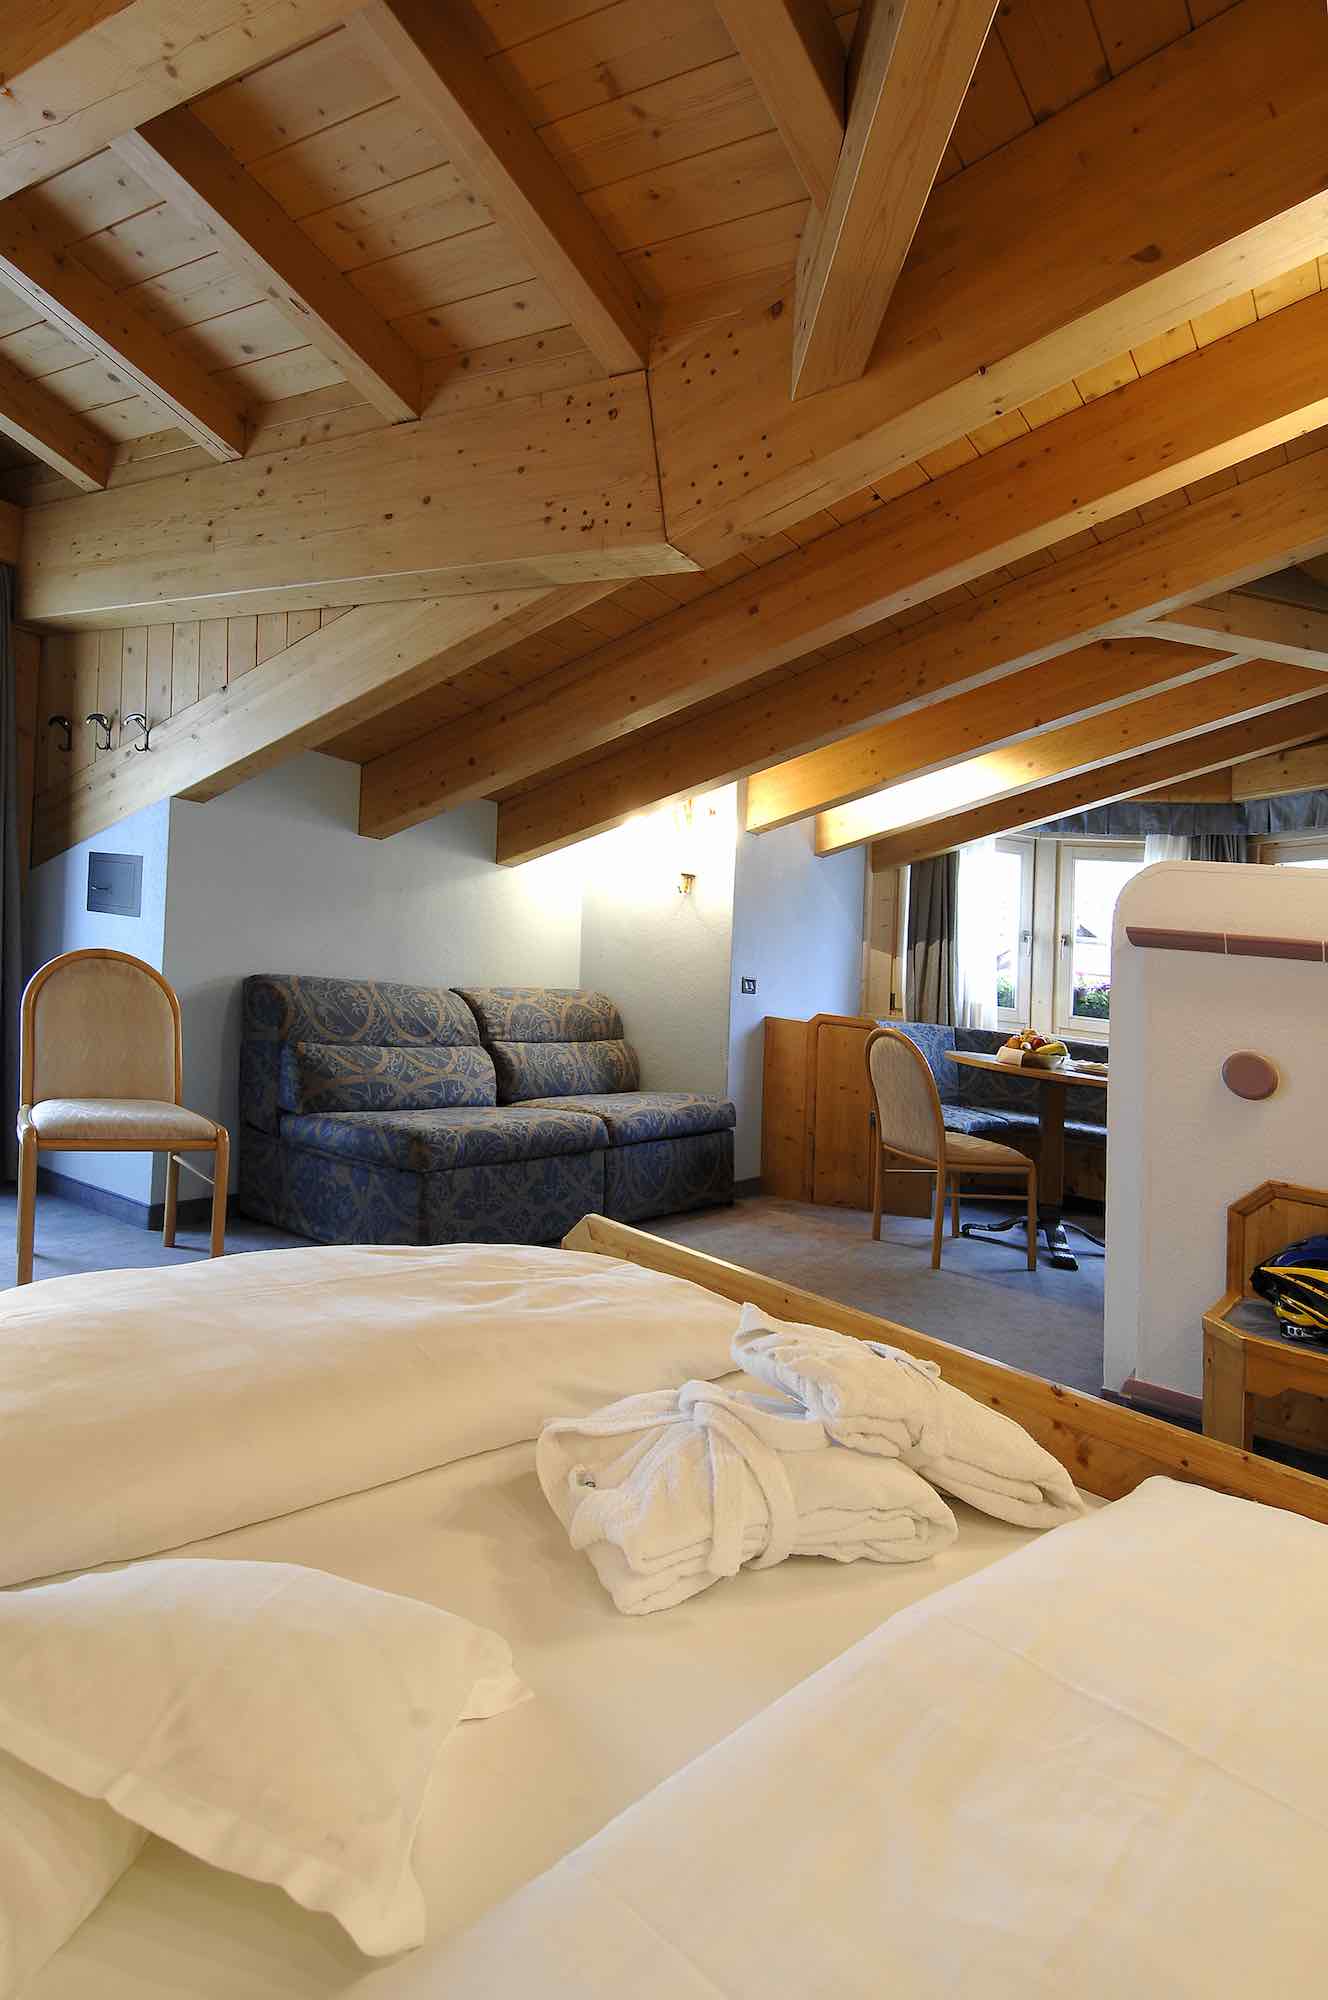 Hotel Concordia - Via Plan N.114, Livigno 23041 - Room - Suite 2